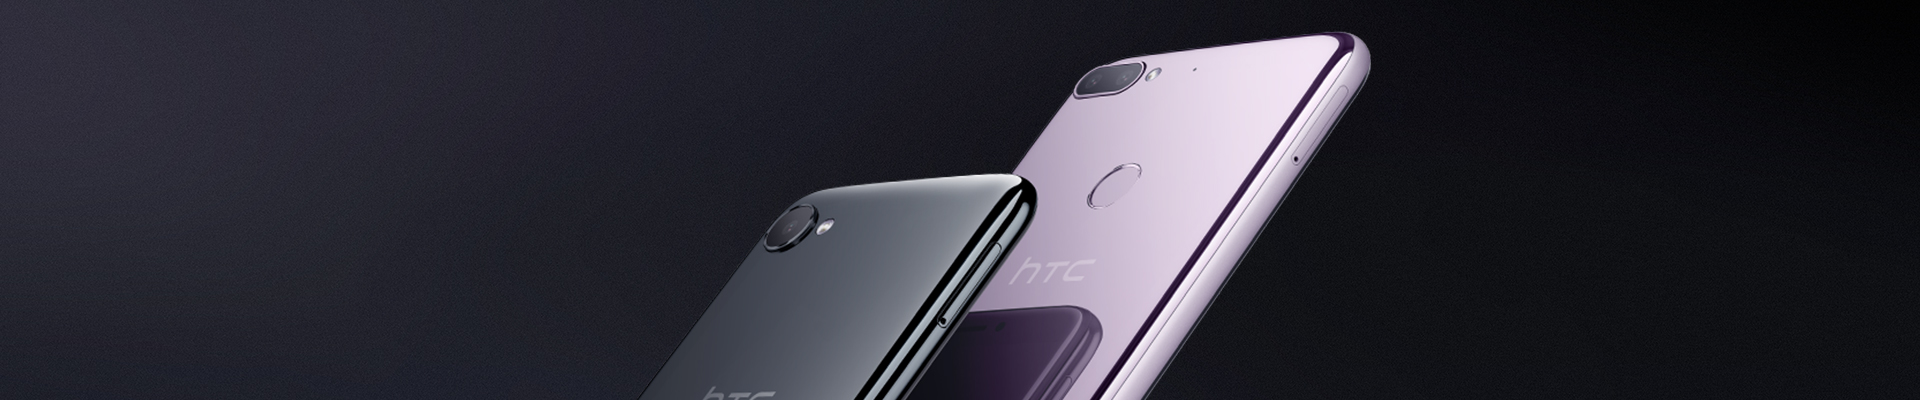 HTC Desire 12 и HTC Desire 12+ доступны для предзаказа